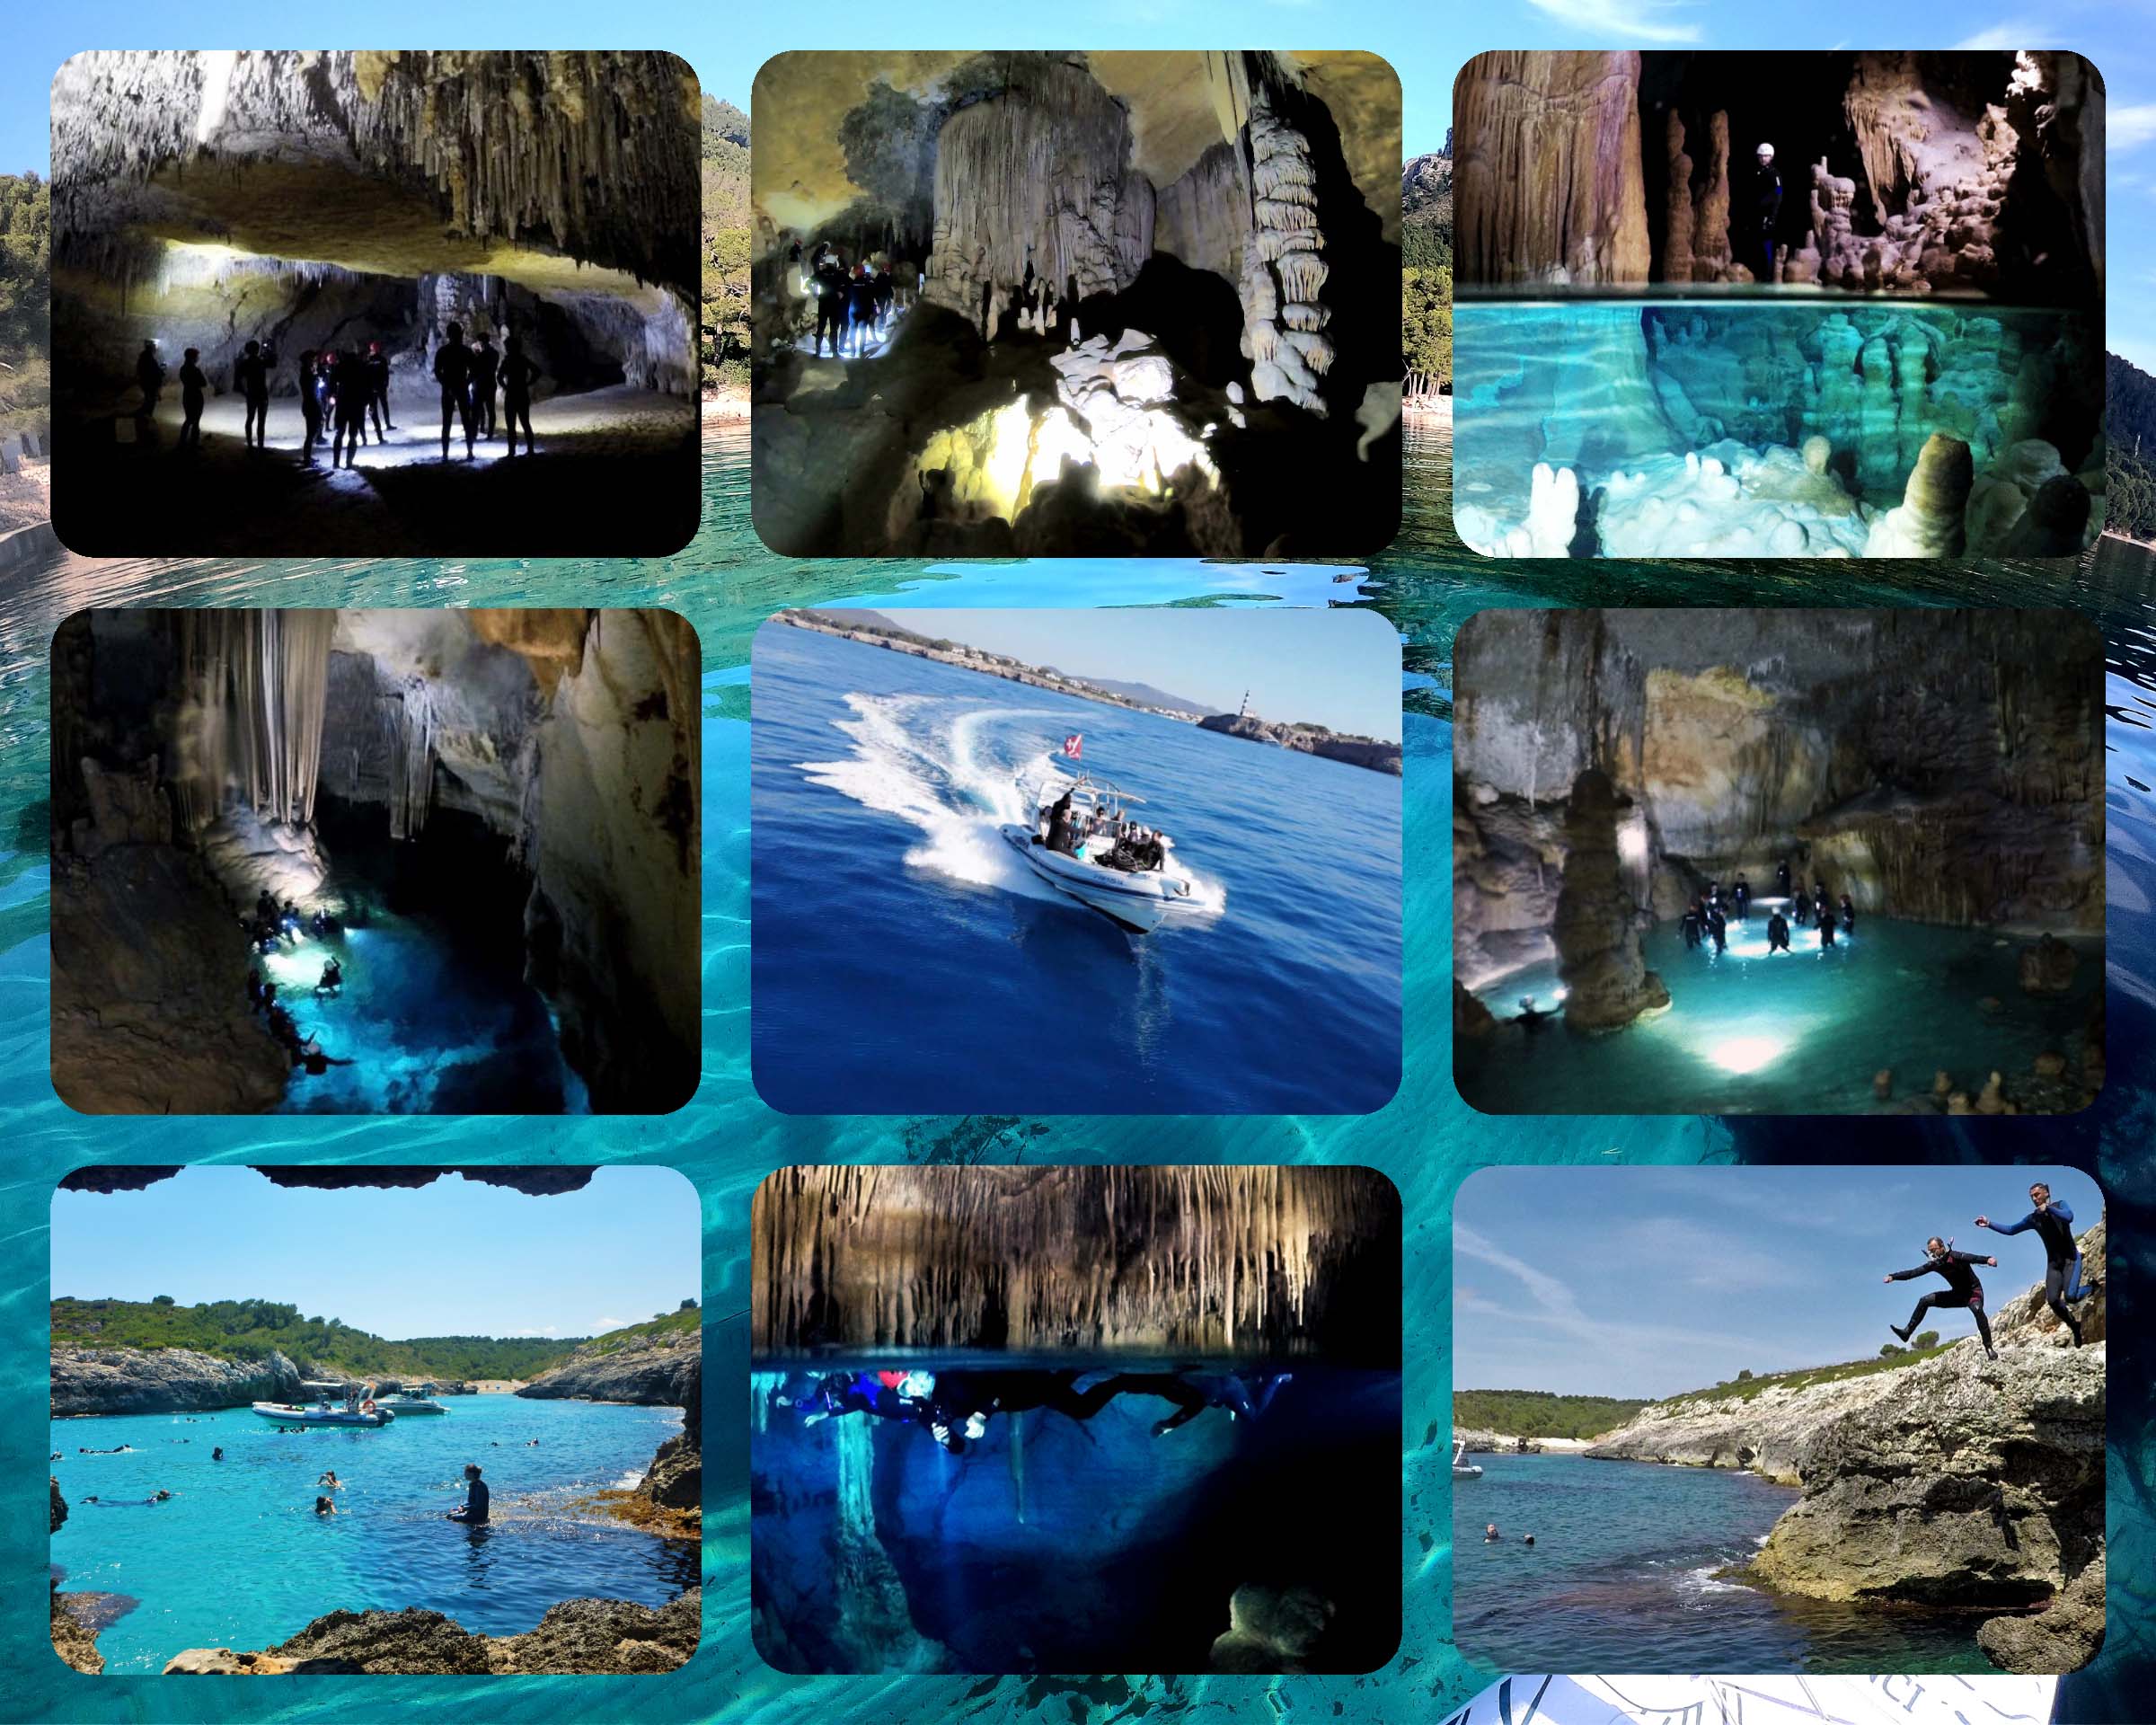 Cueva del Pirata Mallorca & snorkel trip 